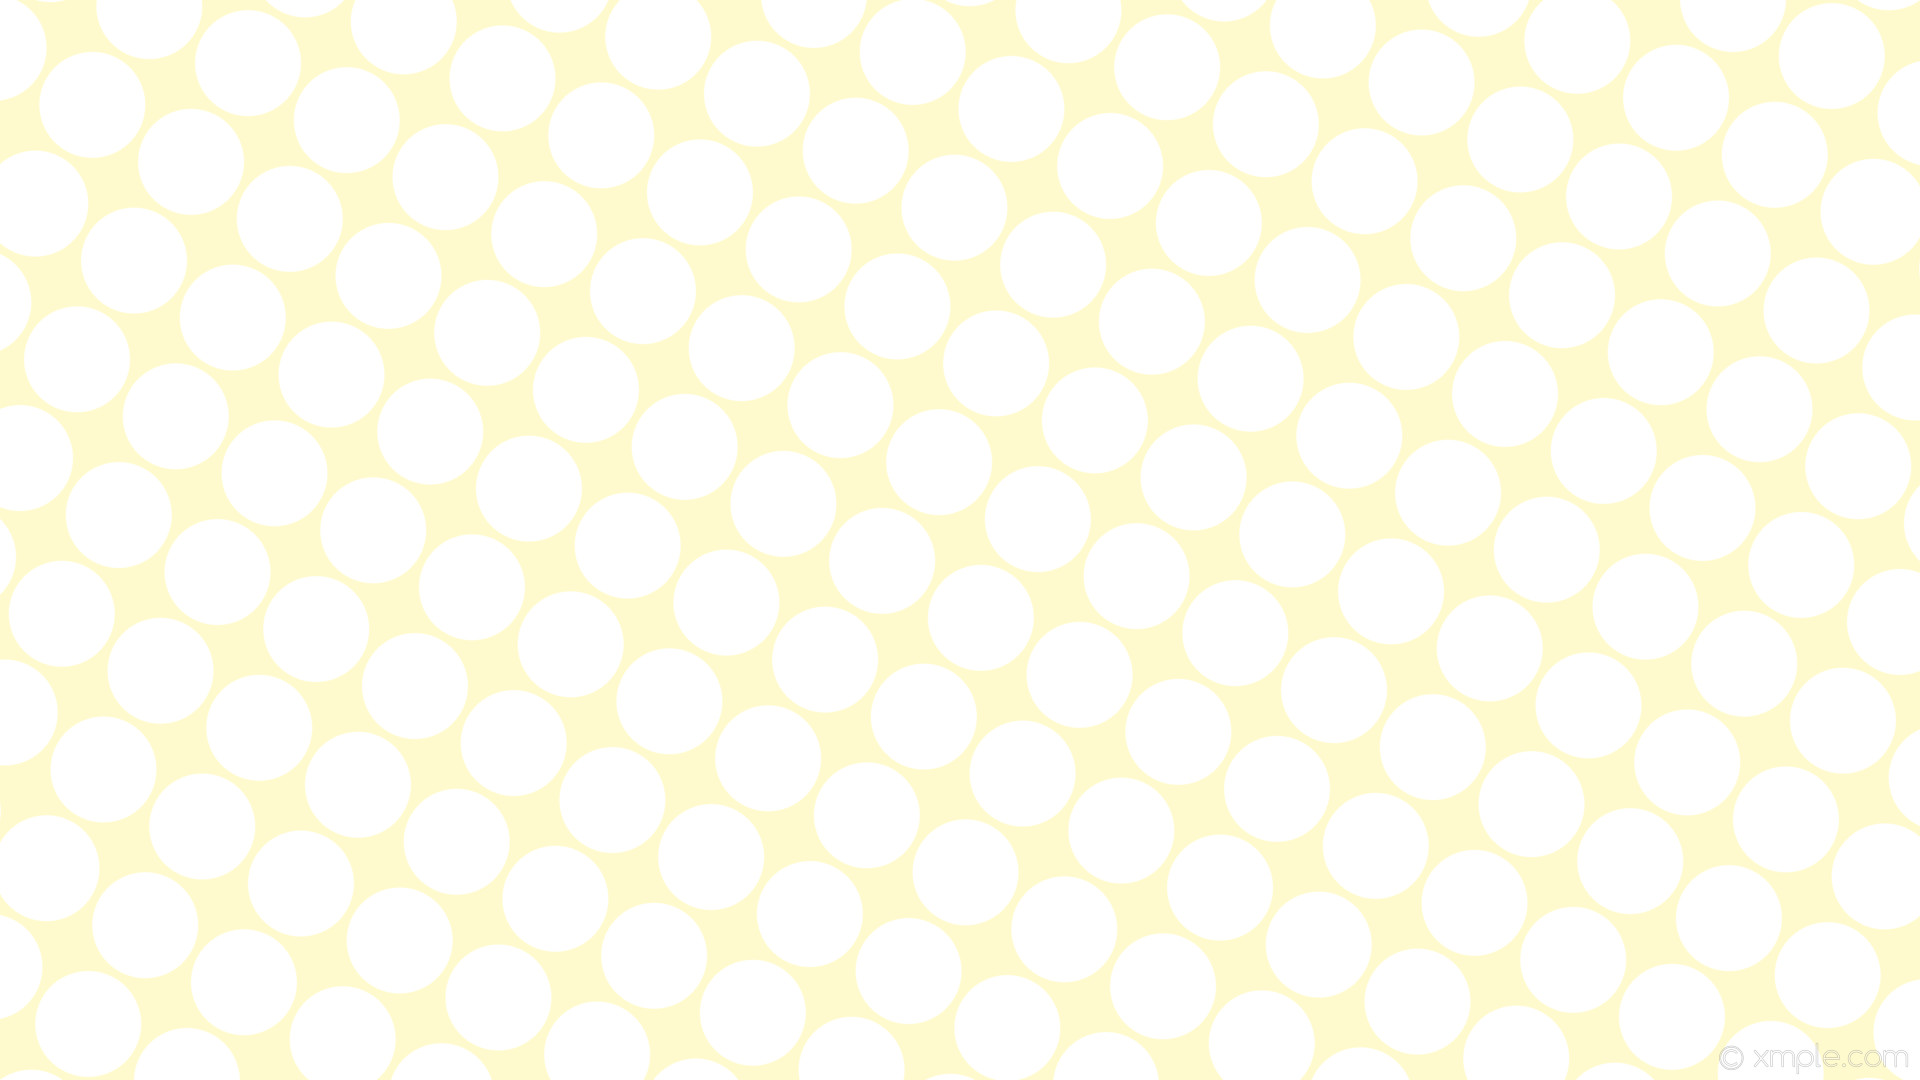 1920x1080 wallpaper dots spots white yellow polka lemon chiffon #fffacd #ffffff 150Â°  106px 114px